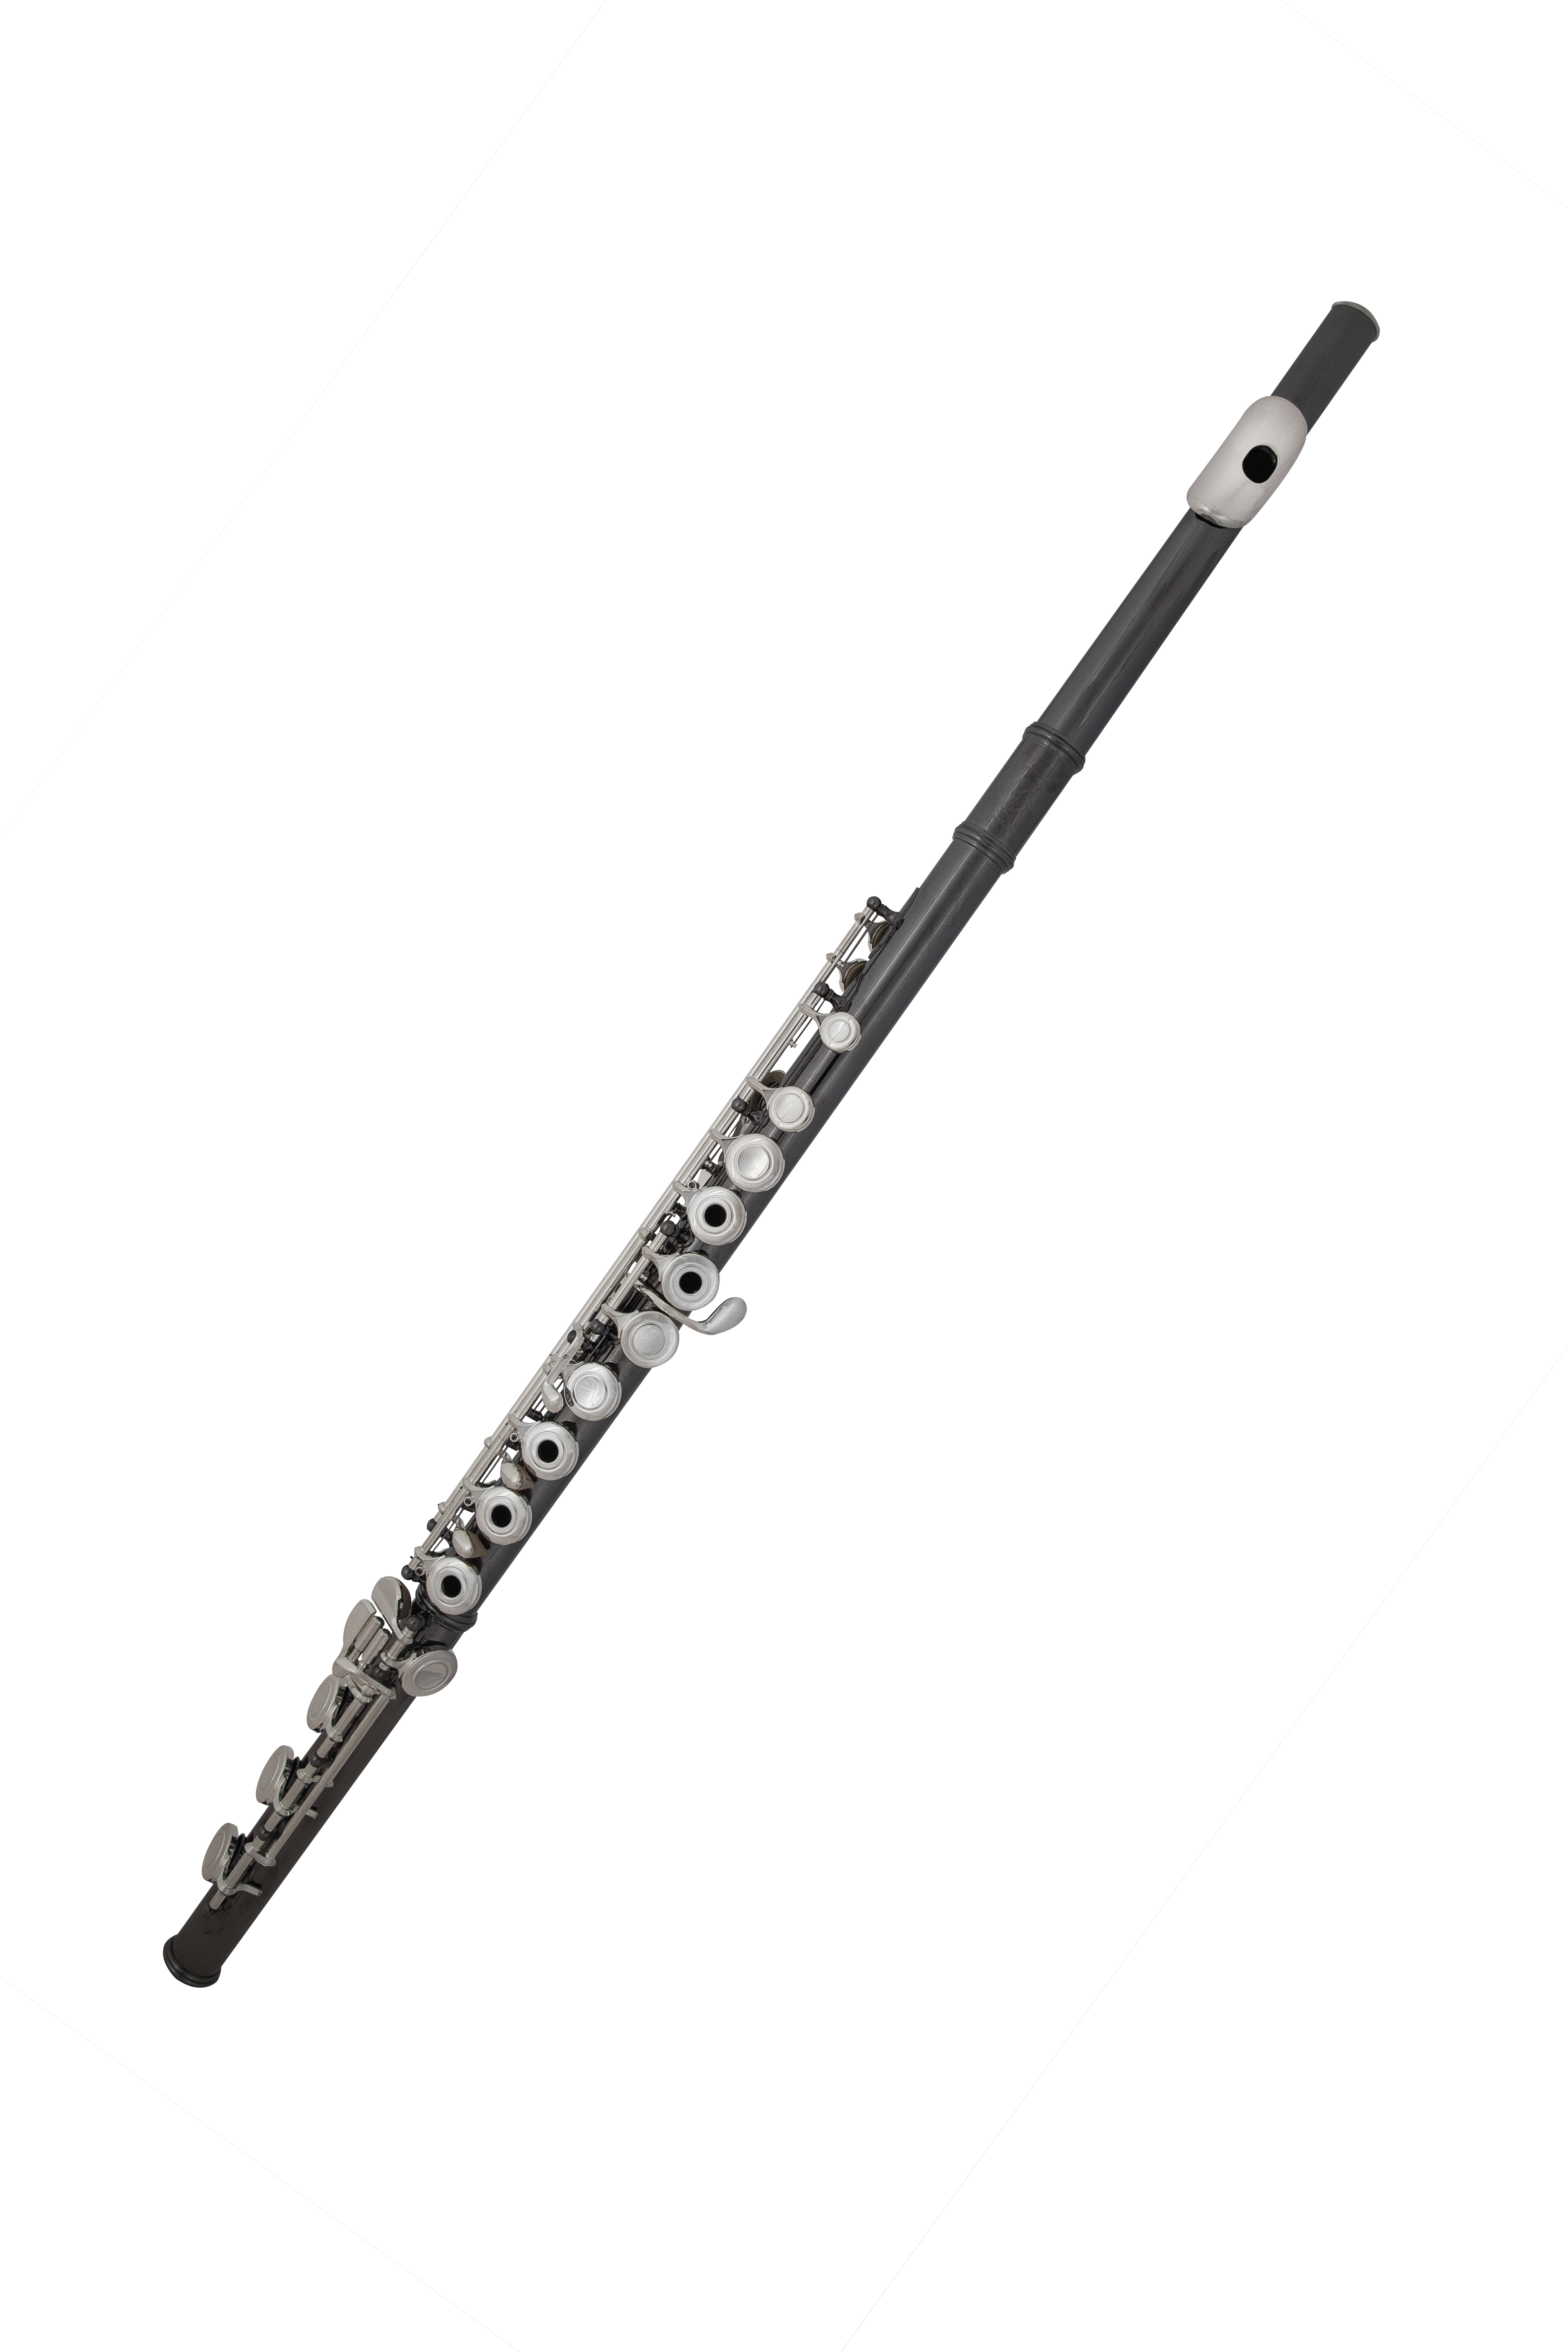 Http www gemeinhardt com. Flutes clipart wooden flute